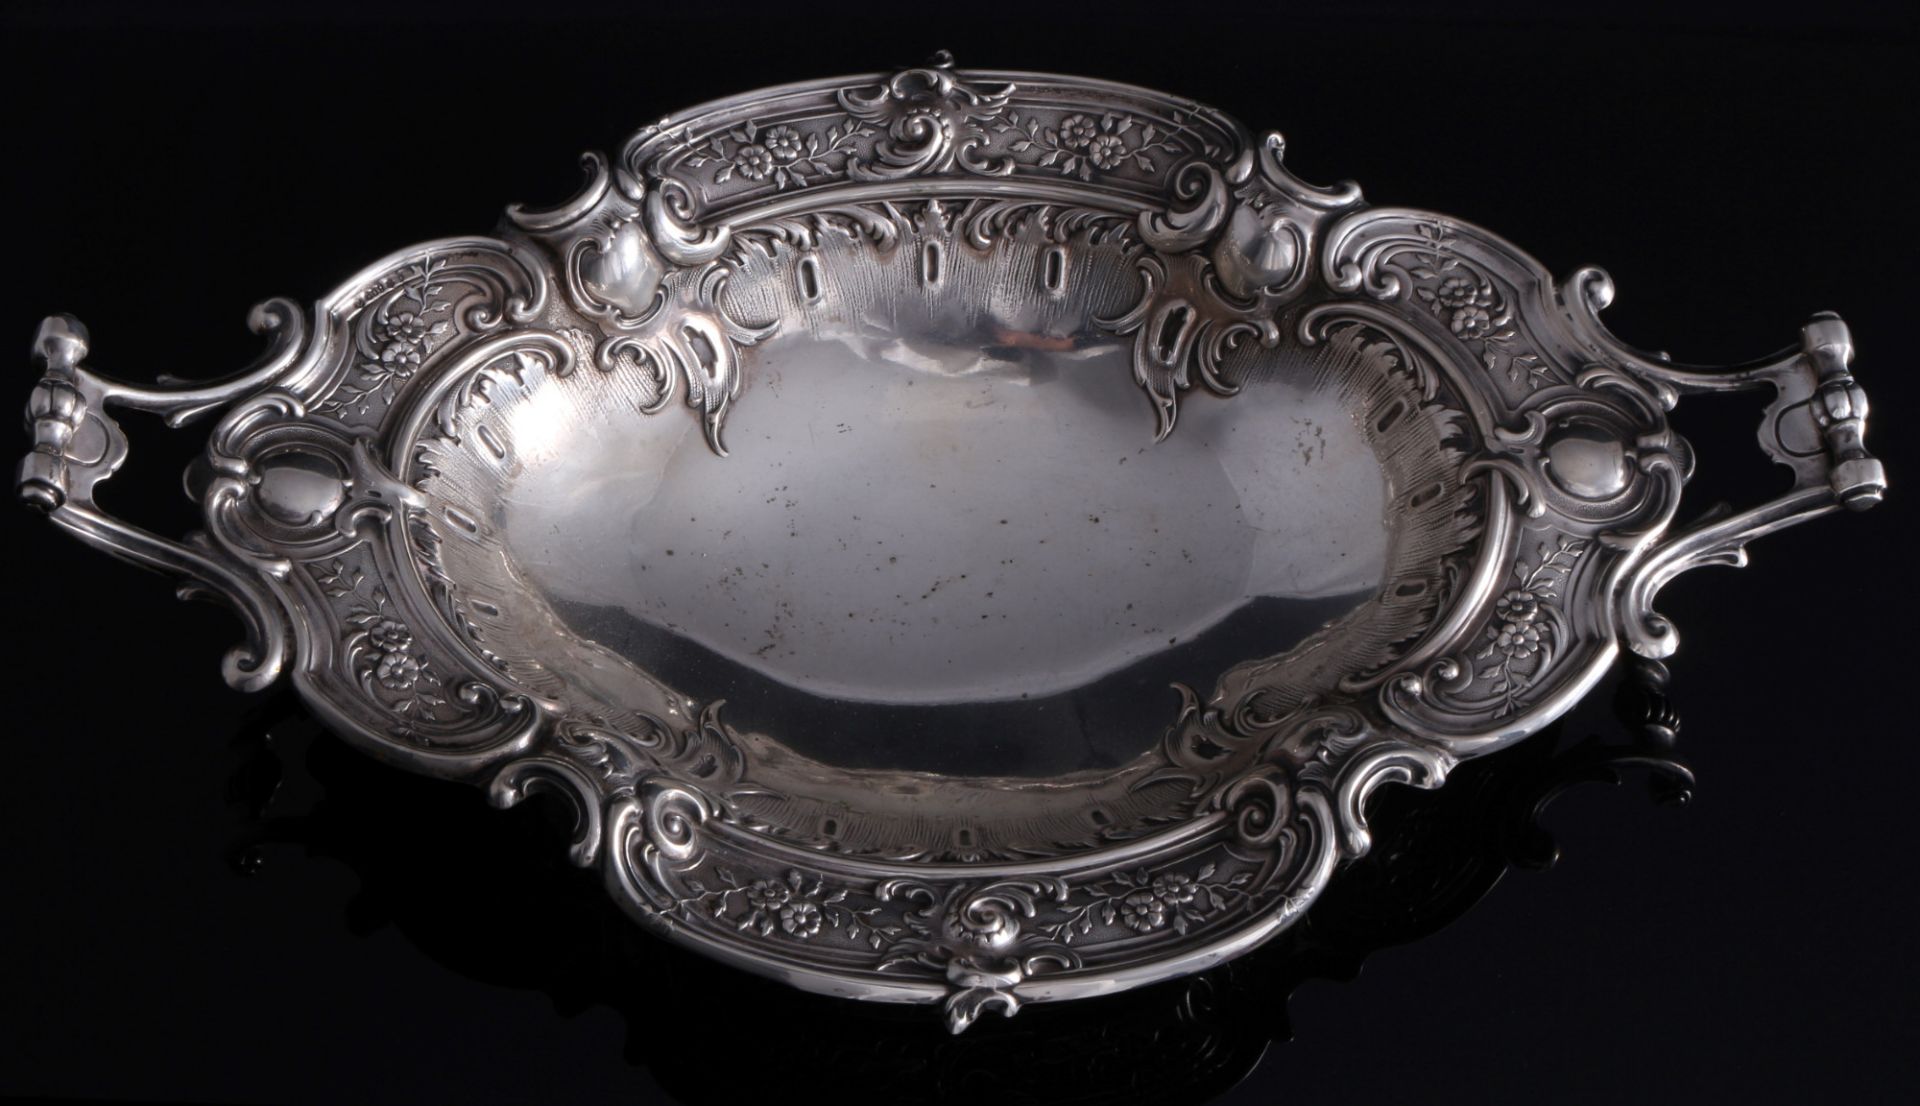 800 silver large handled bowl art nouveau, Silber große Henkelschale Jugendstil, - Image 2 of 3